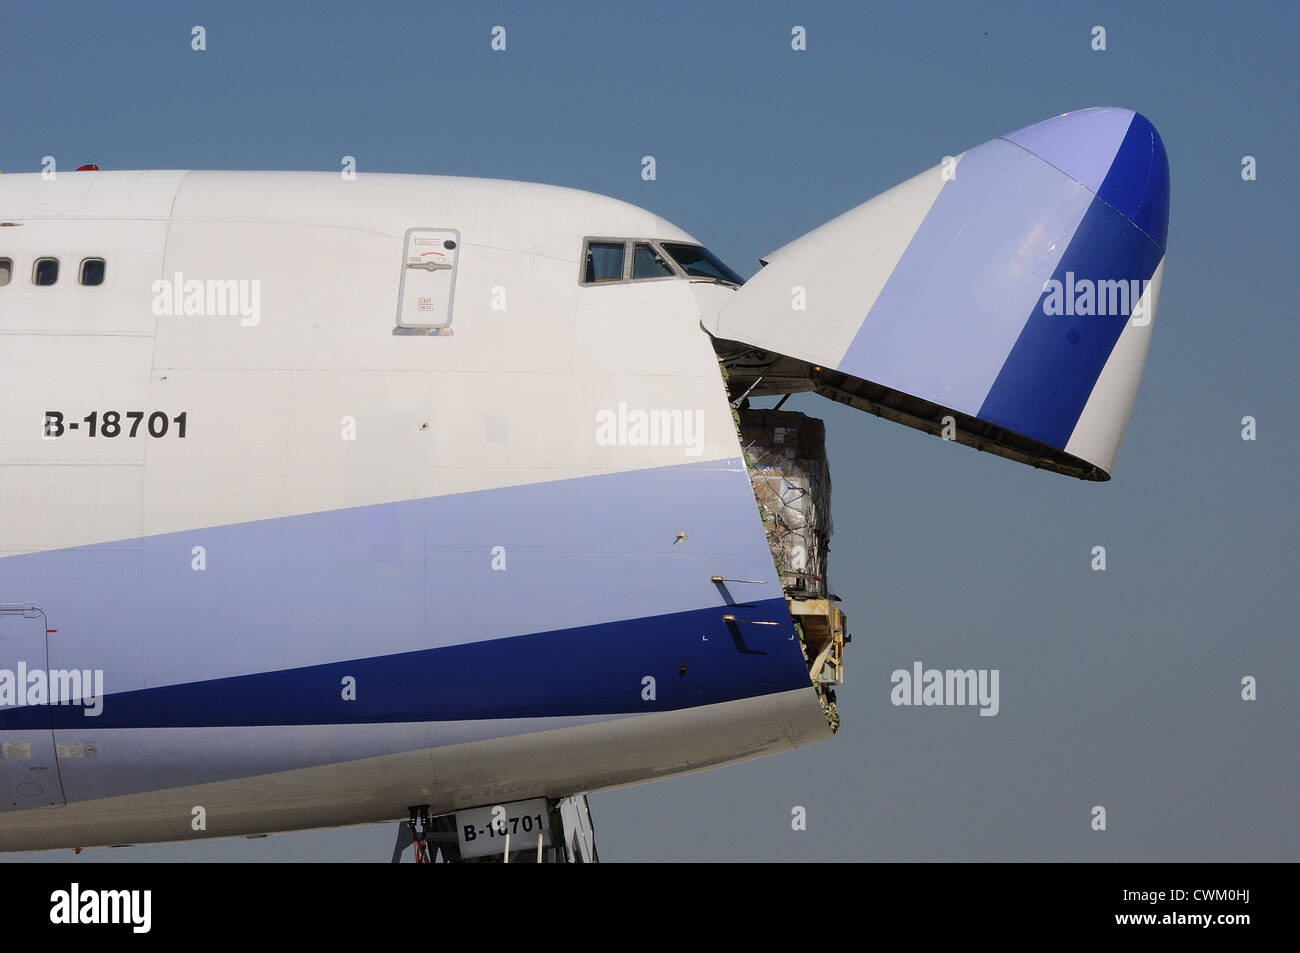 Boeing 747 Stock Photo